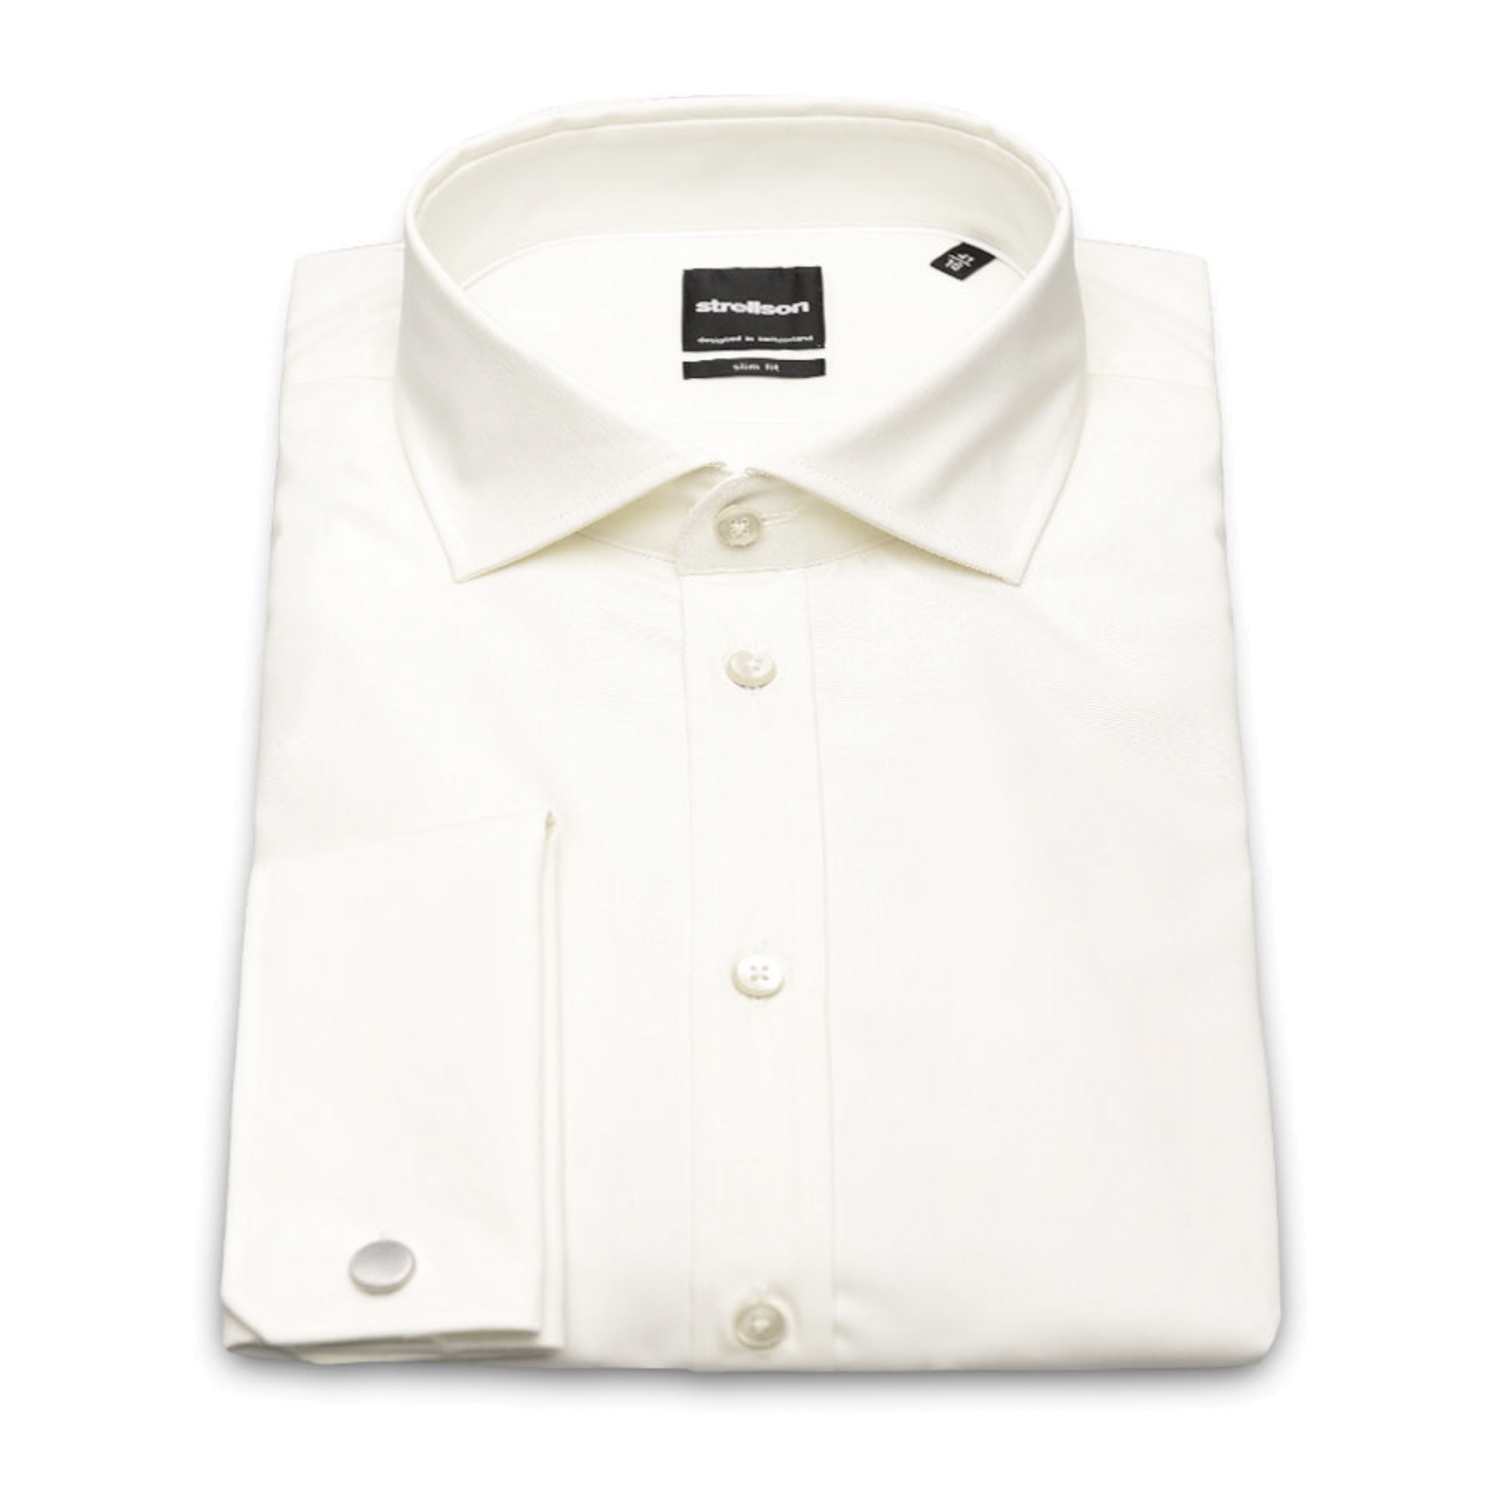 Off White overhemd met dubbelmanchet en normale mouwlengte het merk Strellson 1101662/199 JAMUE Off White